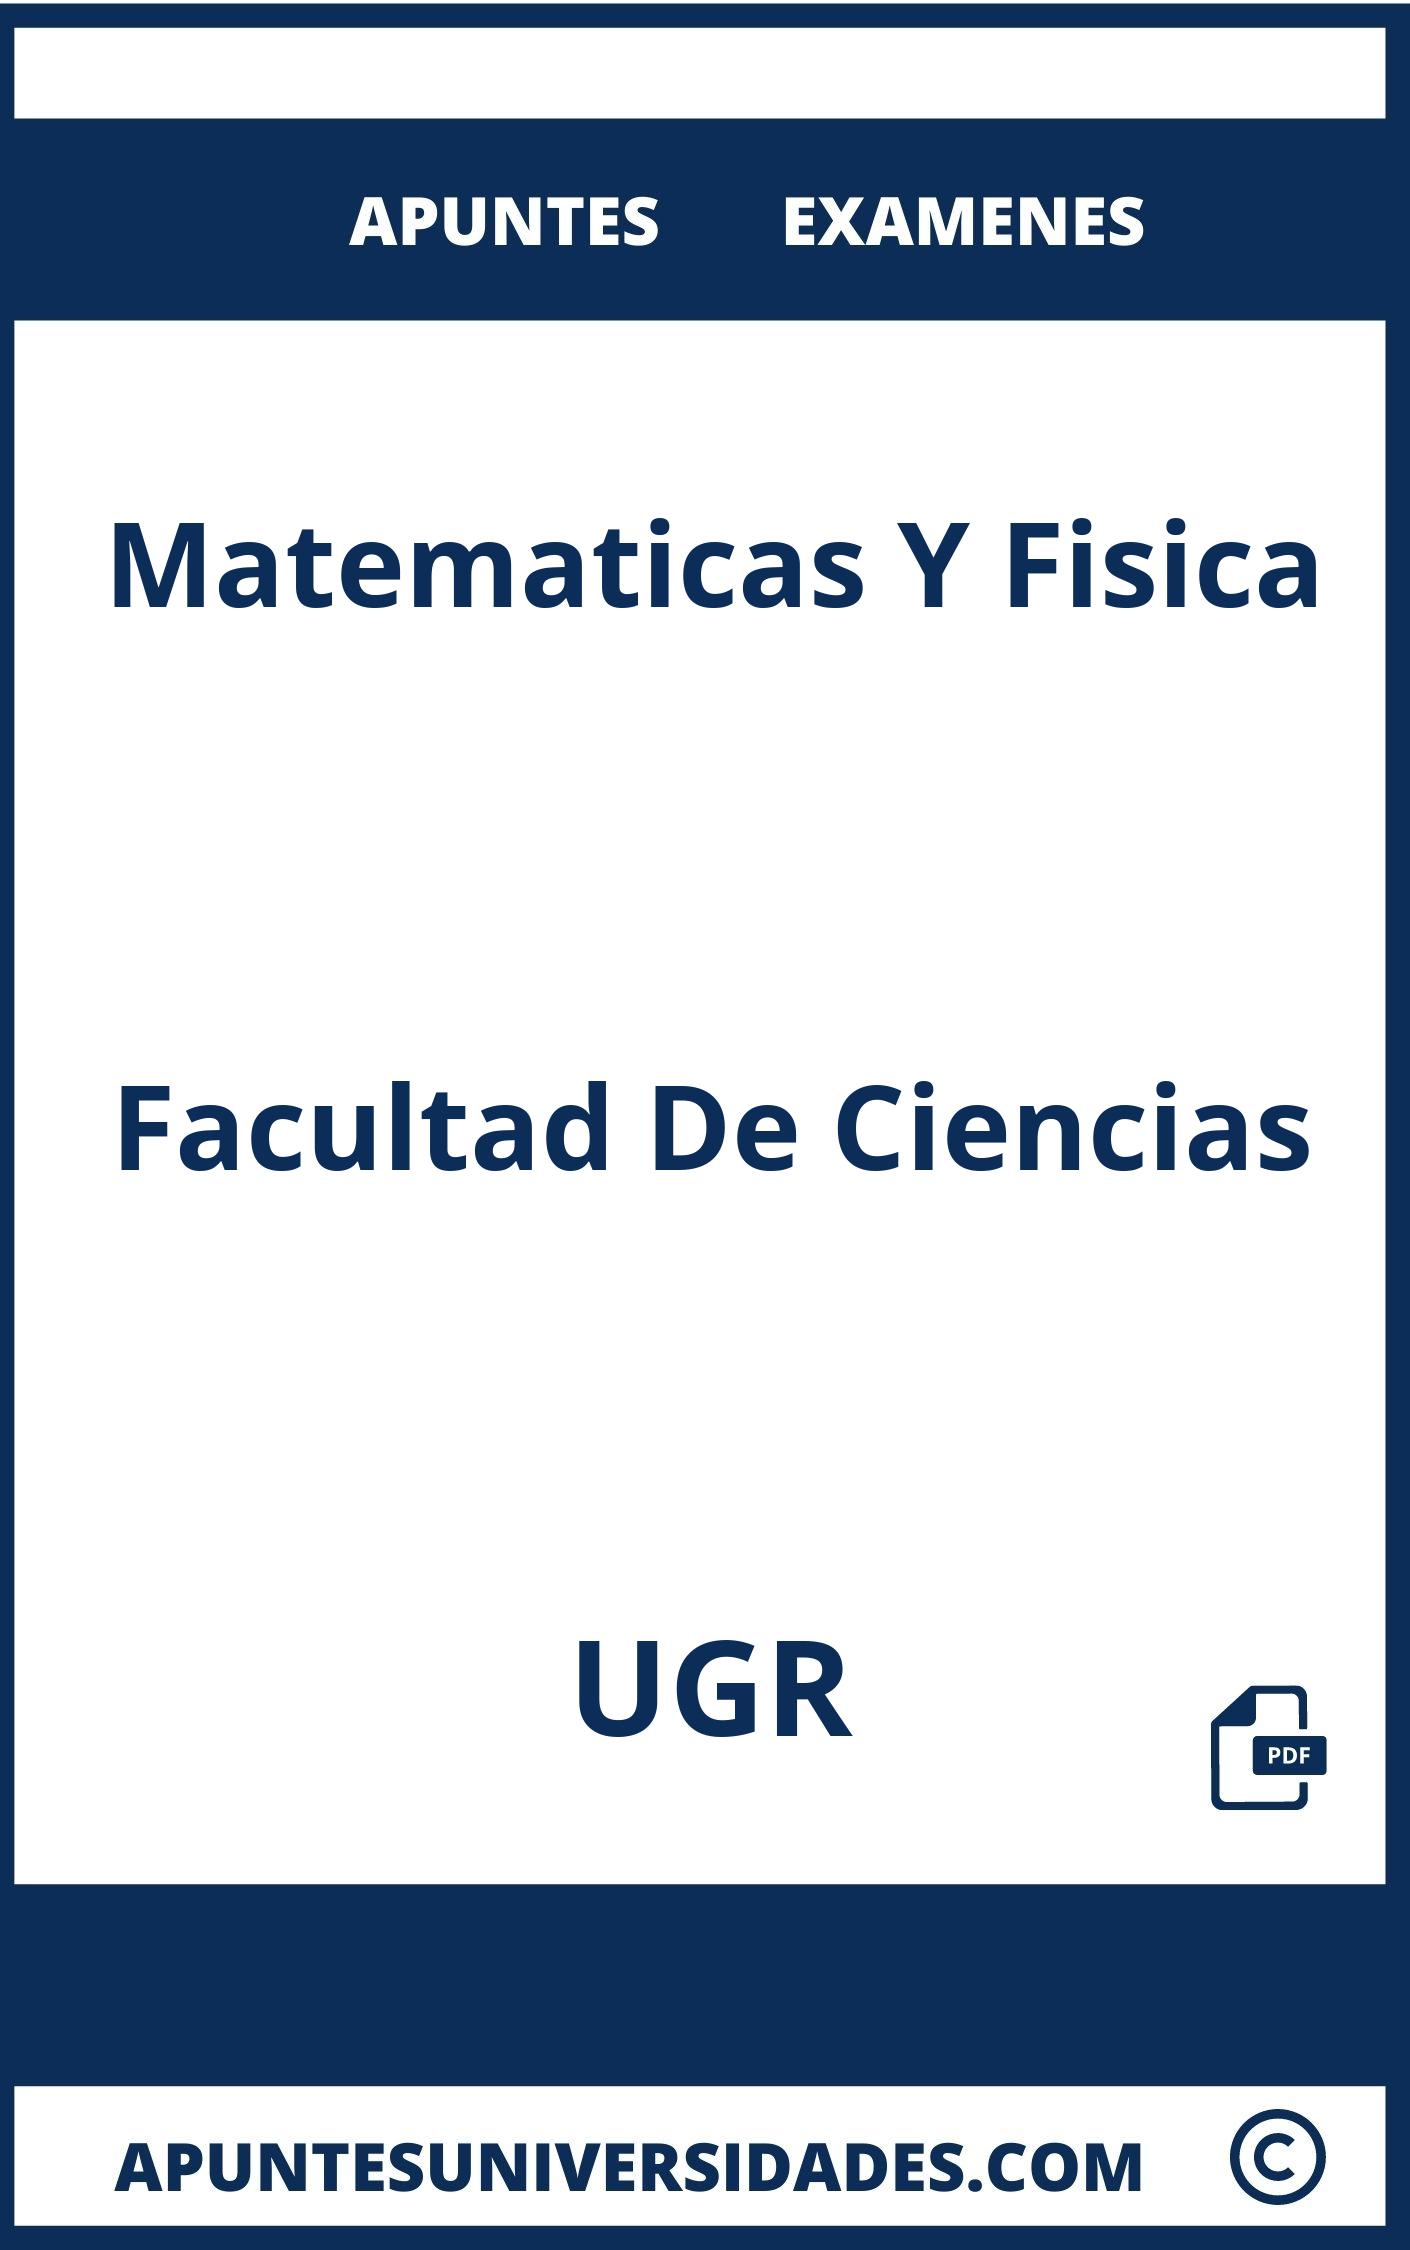 Apuntes Examenes Matematicas Y Fisica UGR